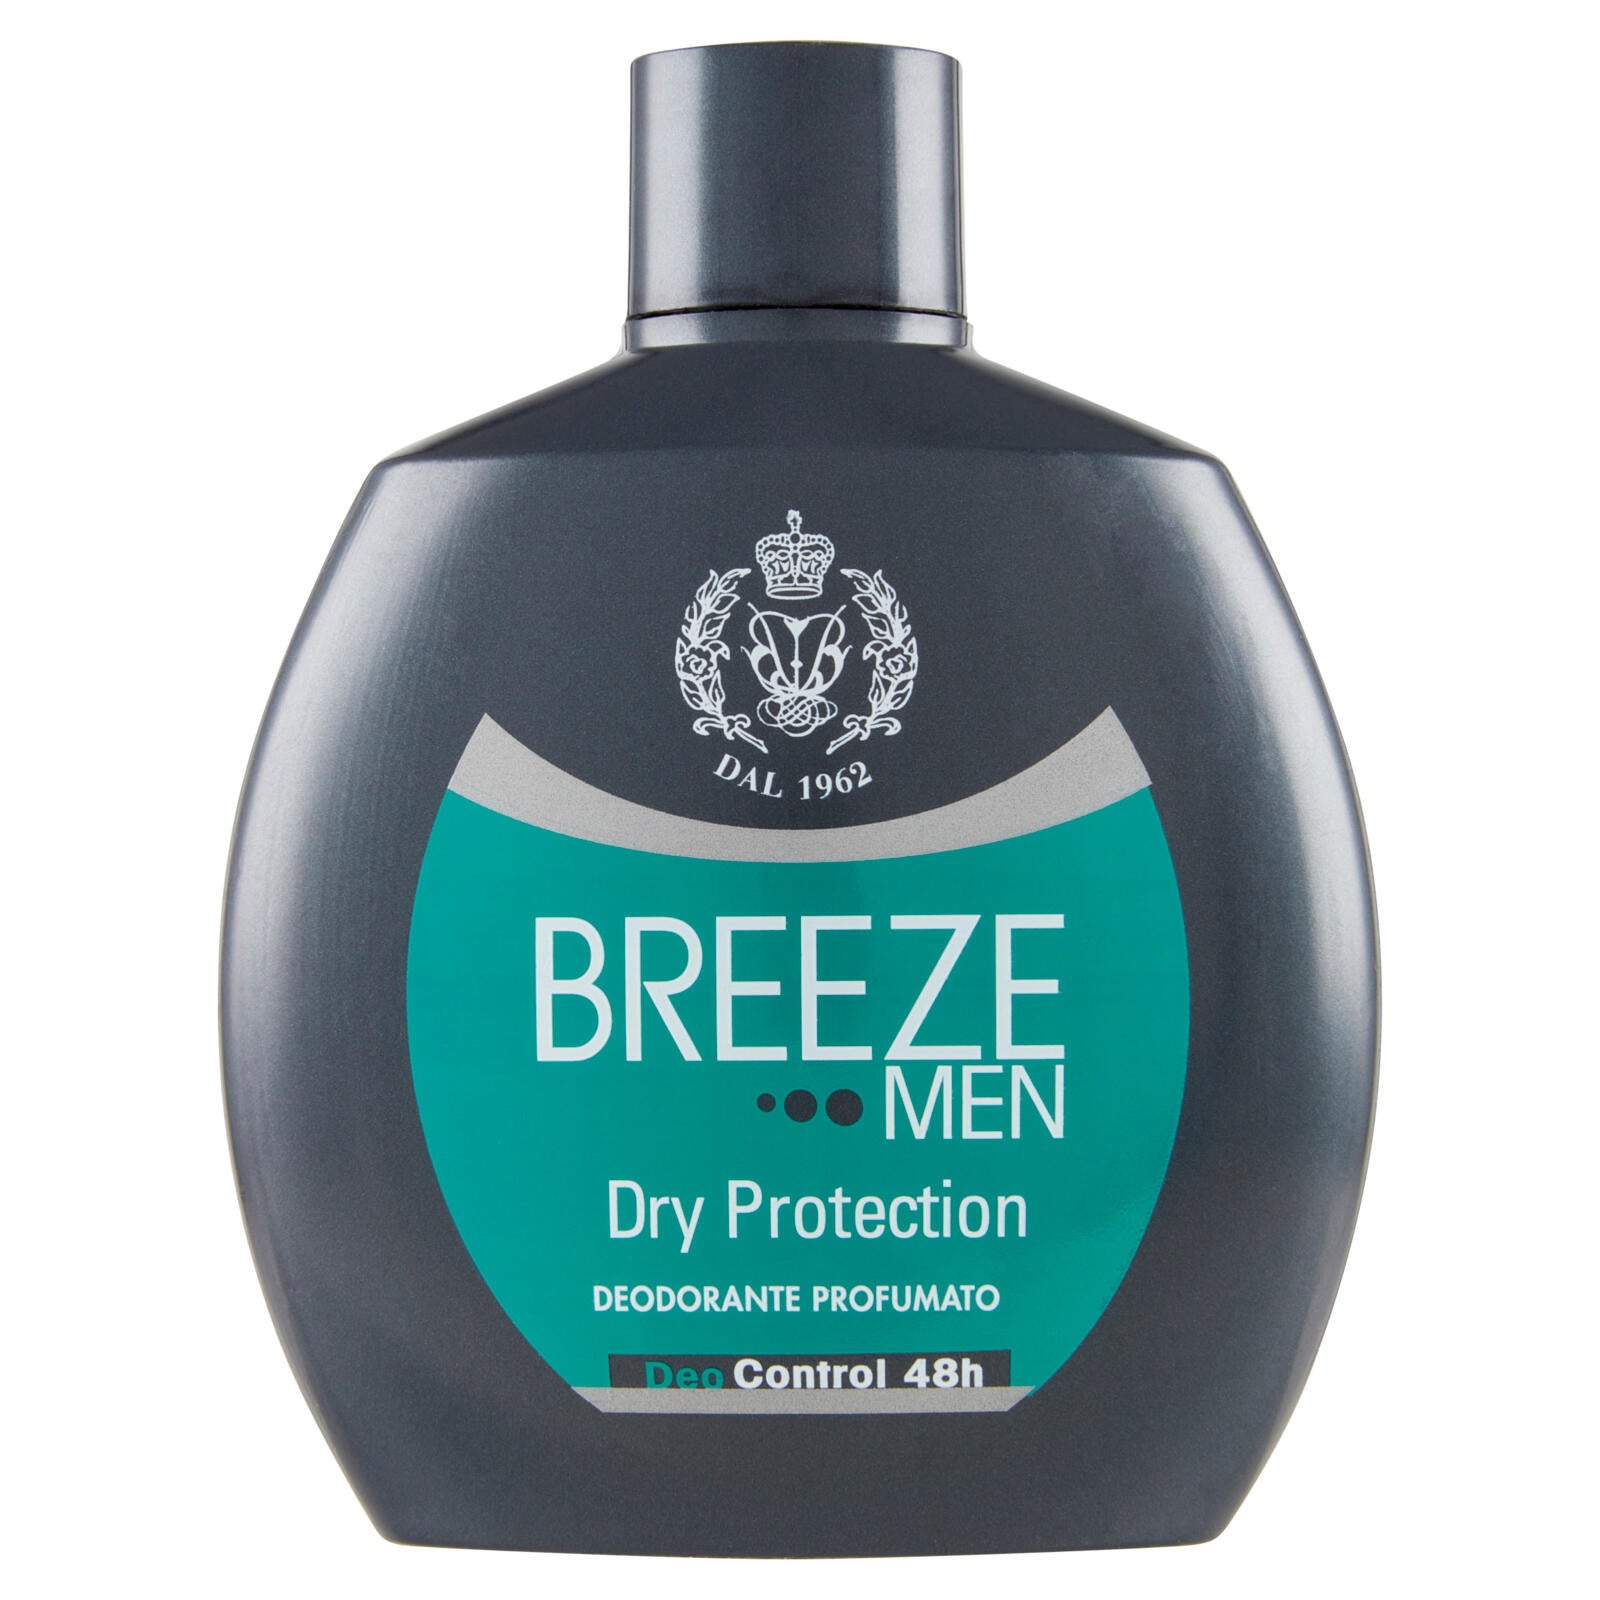 Breeze Men Dry Protection Deodorante Profumato 100 mL